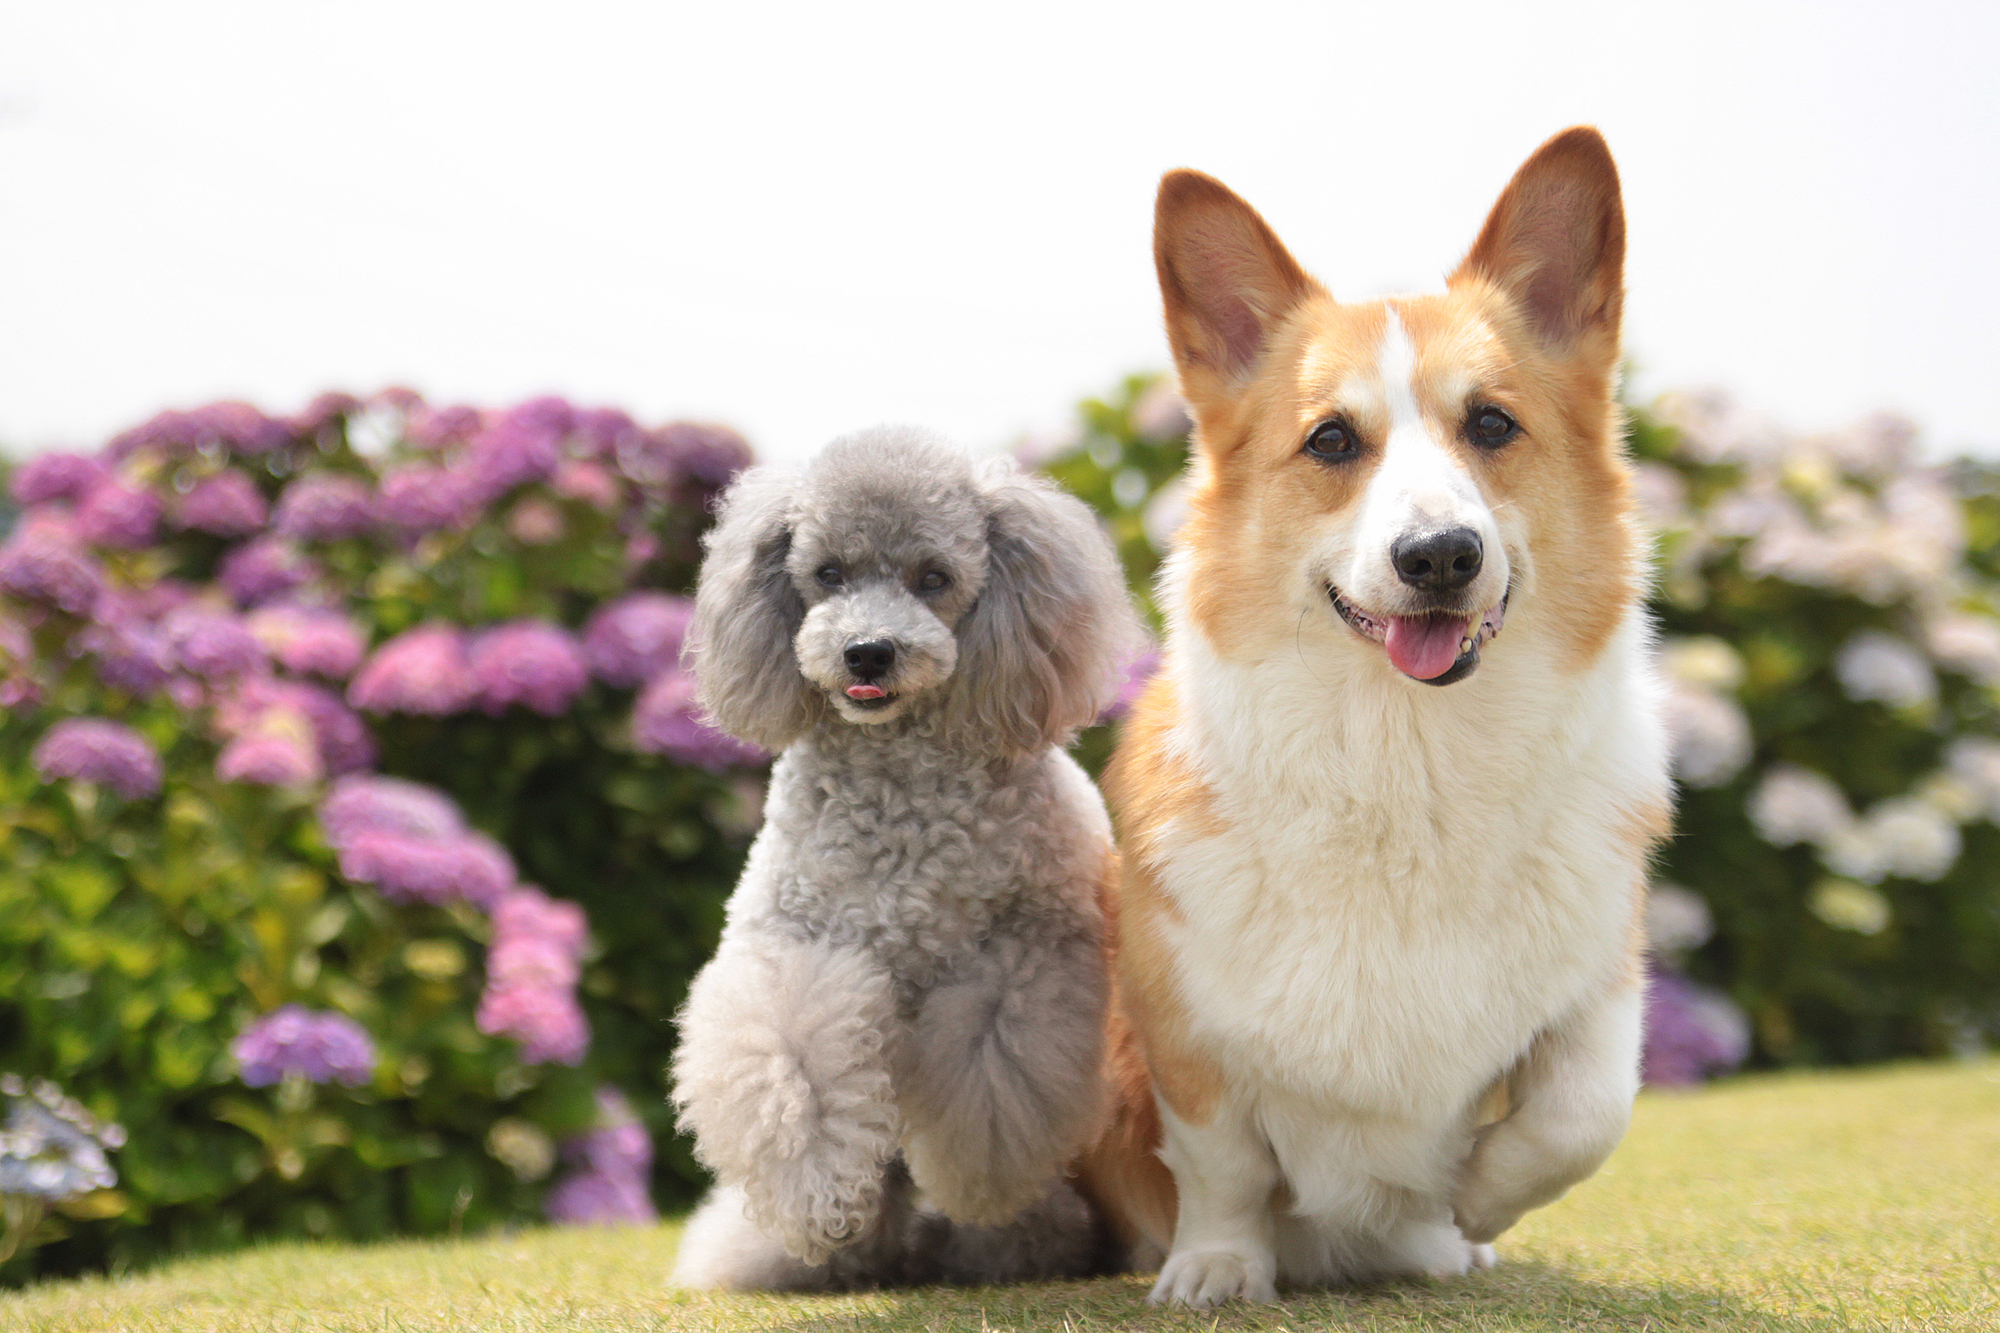 関東 東海 愛犬と一緒に散策を楽しもう 6月の代表花 あじさい の名所11選 愛犬との旅行ならイヌトミィ